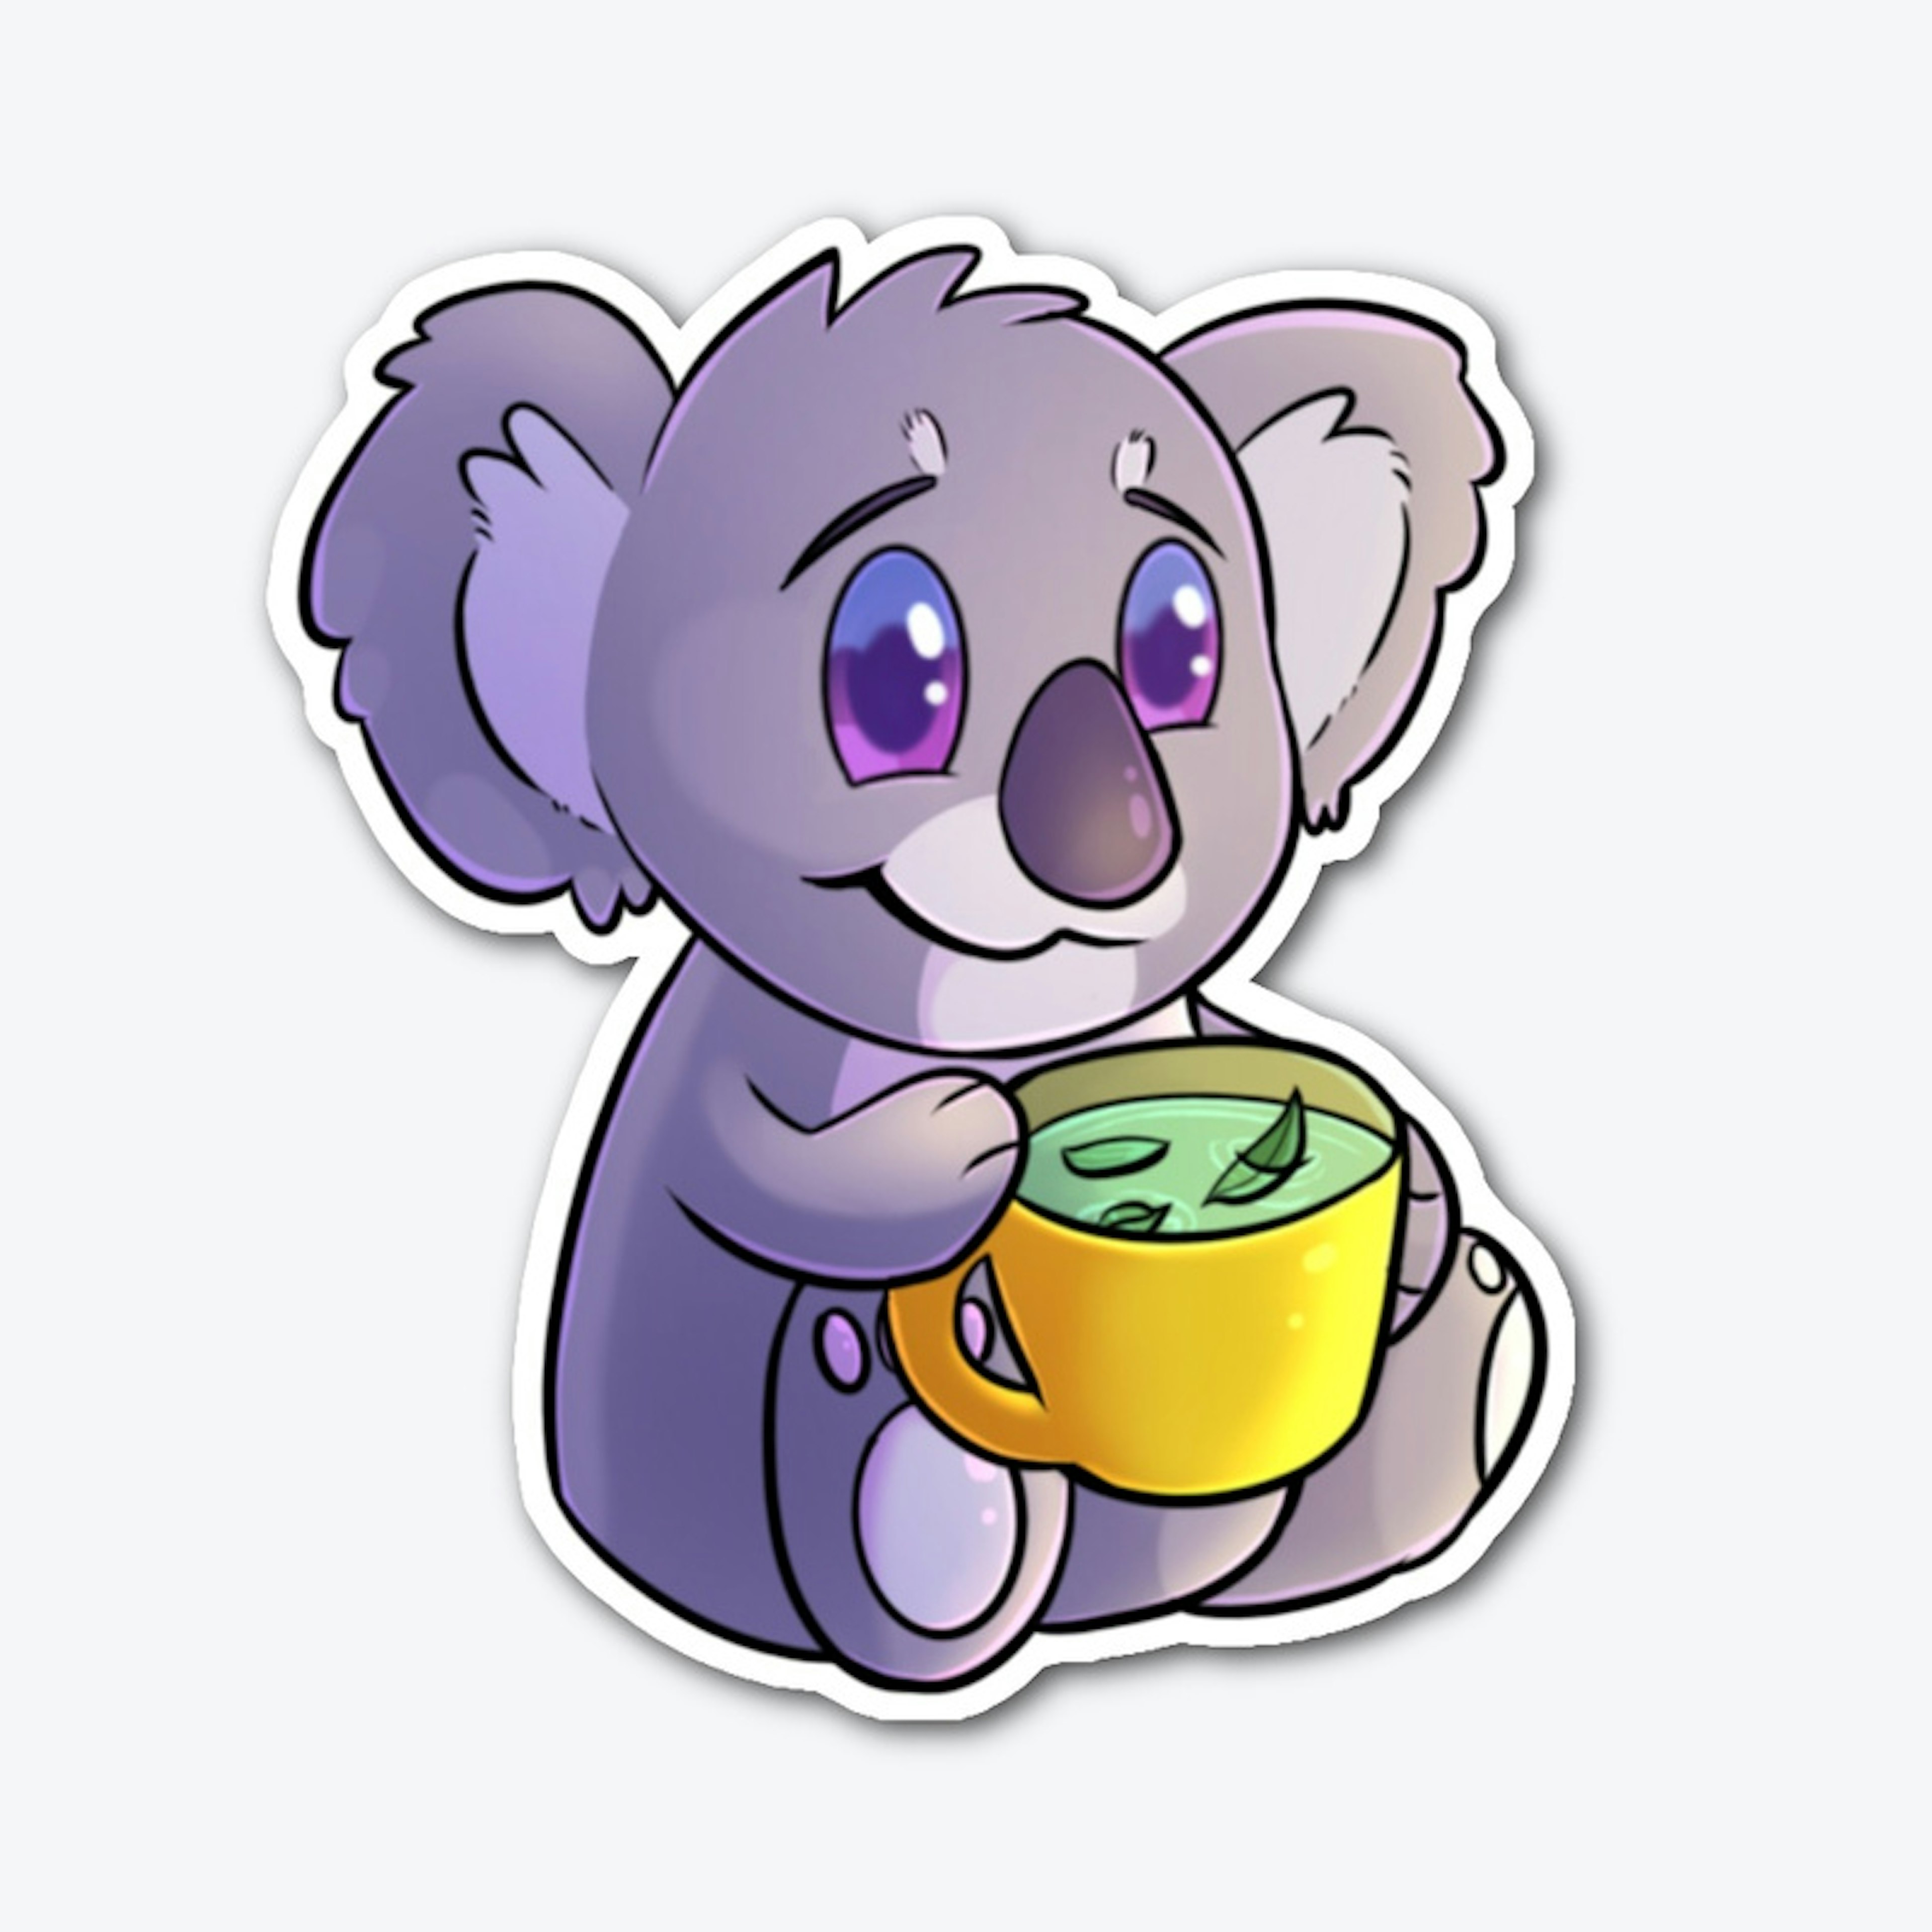 Koala-Tea